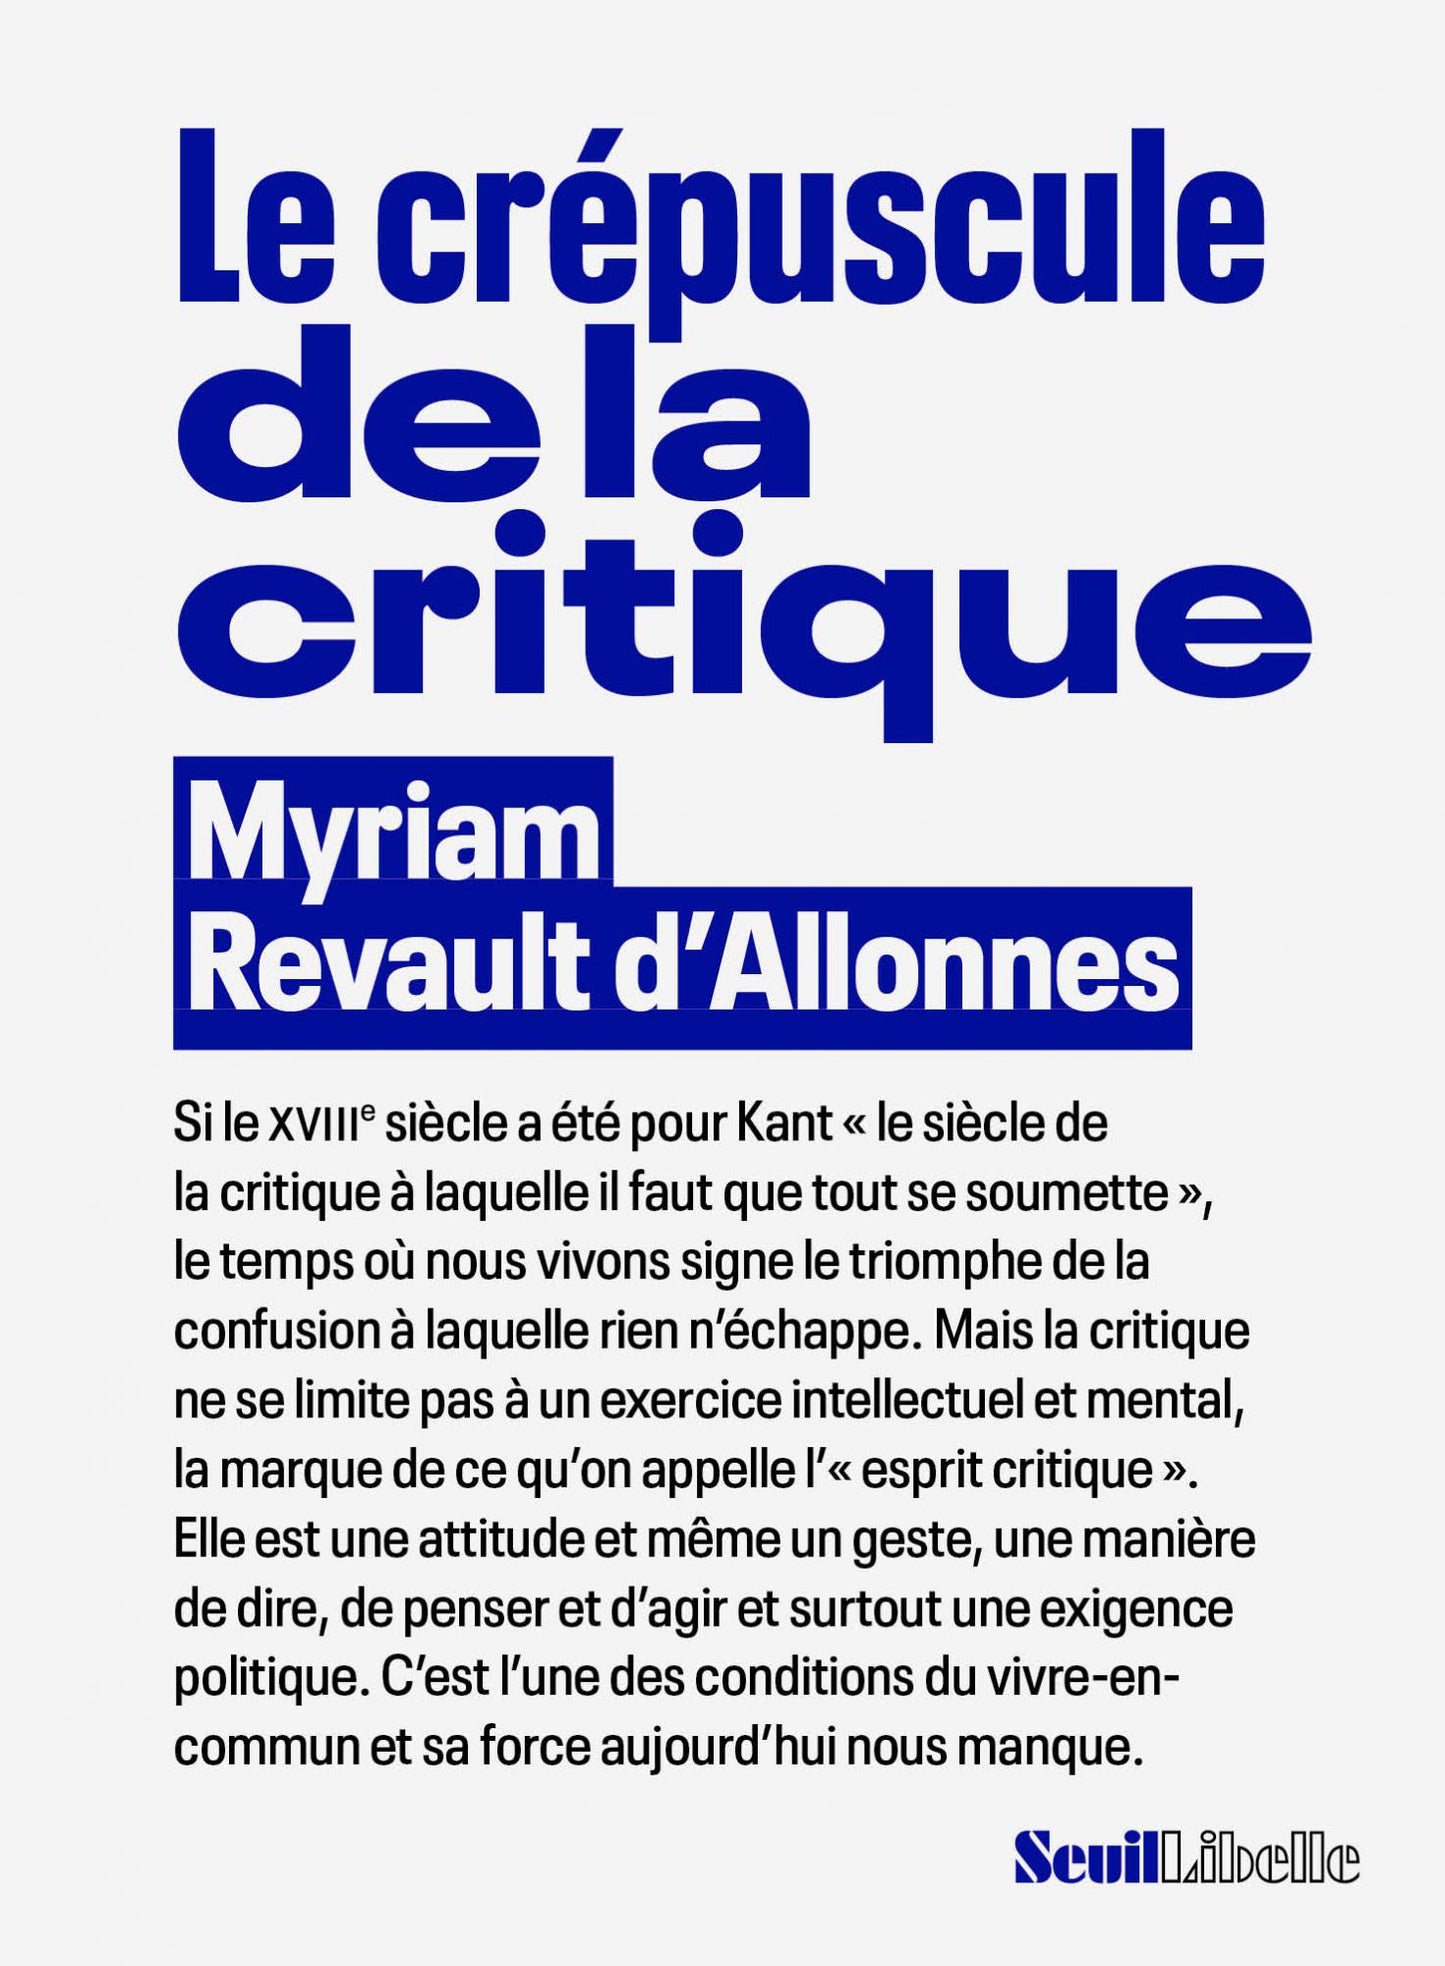 Le crépuscule de la critique - Myriam Revault d'Allonnes